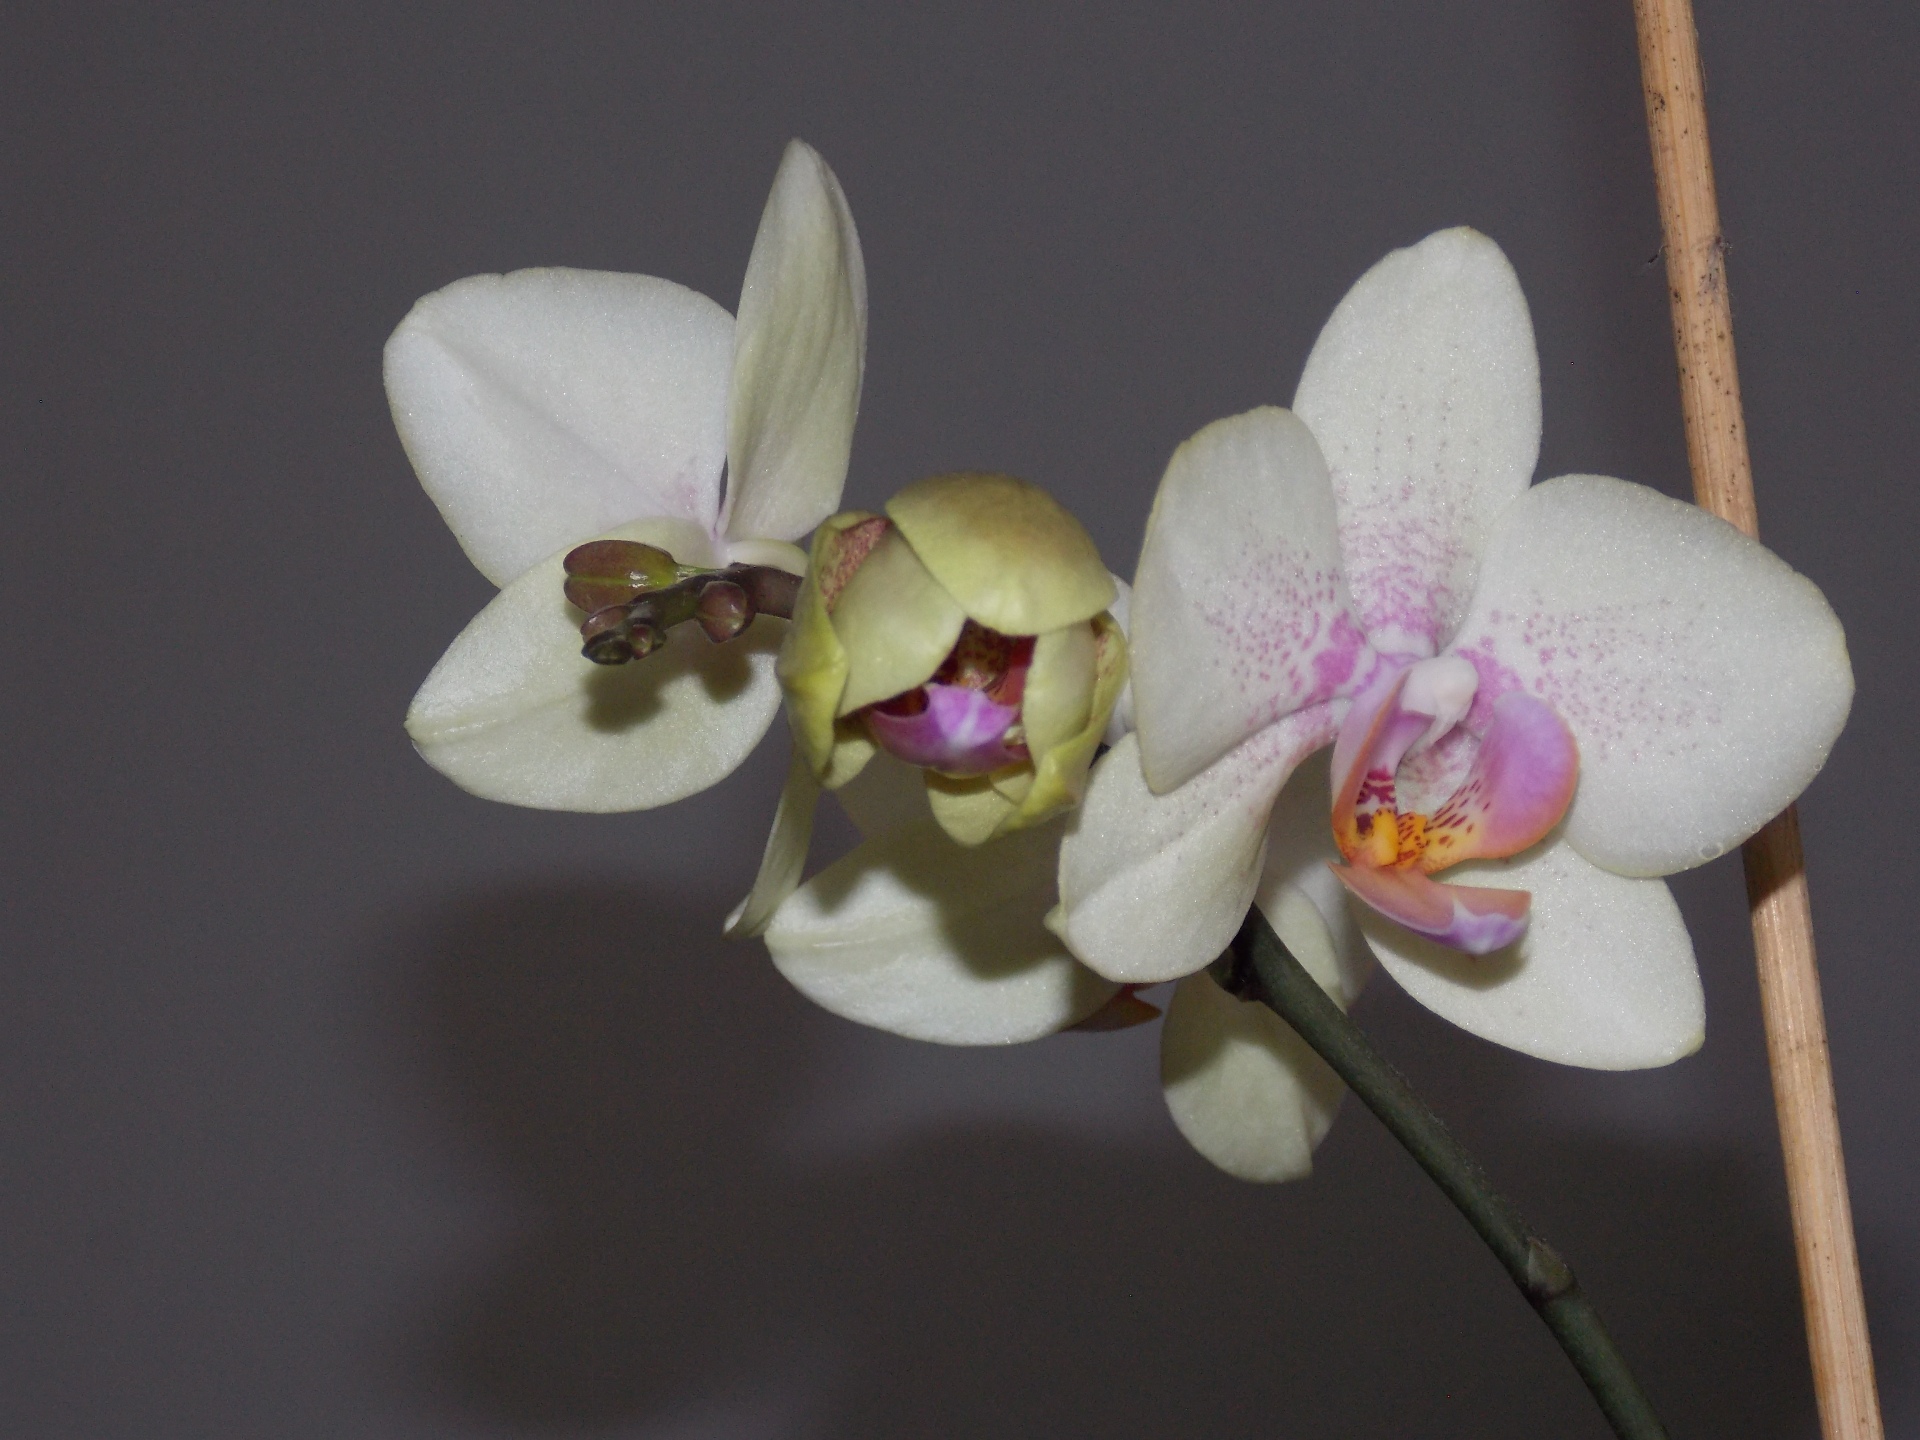 Orchidee, fotografiert am 11.02.2017